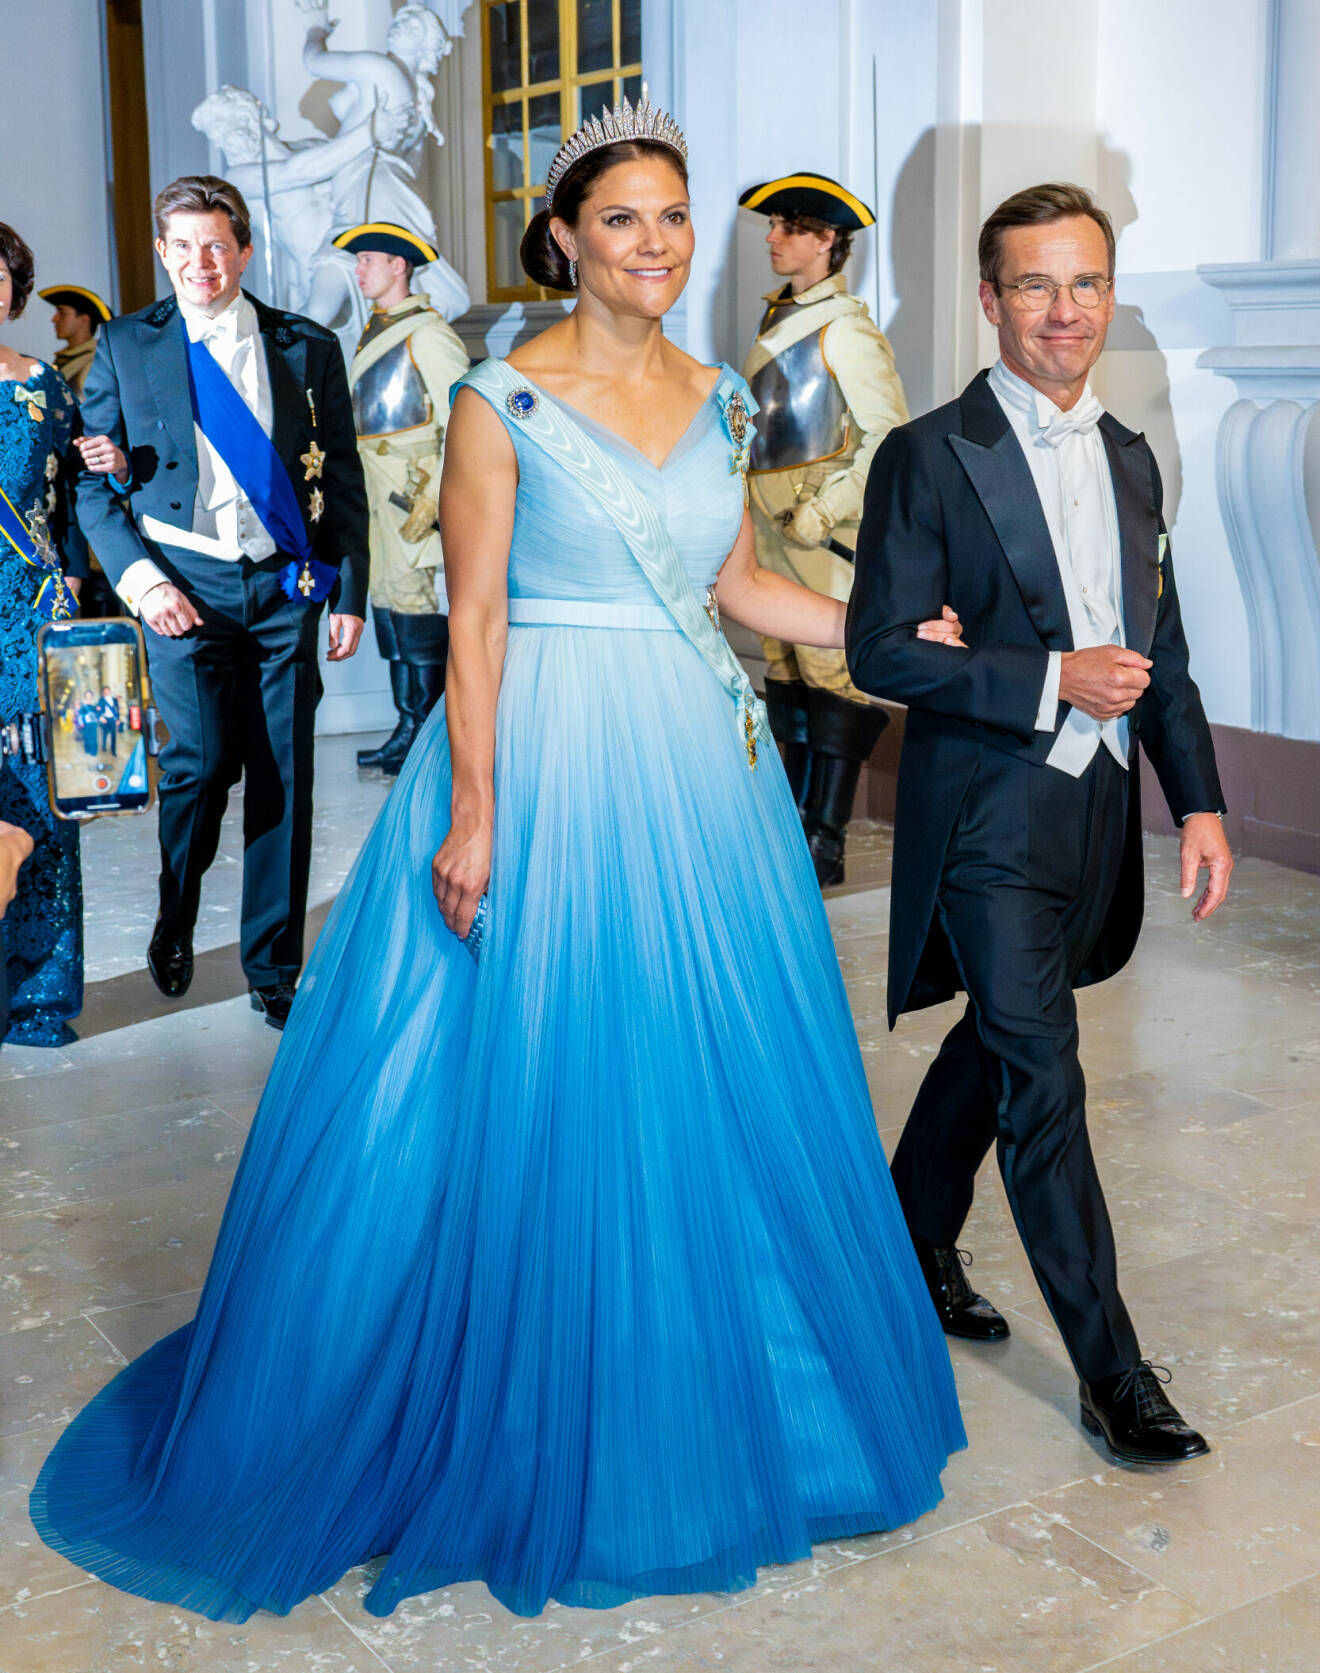 Kronprinsessan Victoria i blå aftonklänning designad av Christer Lindarw